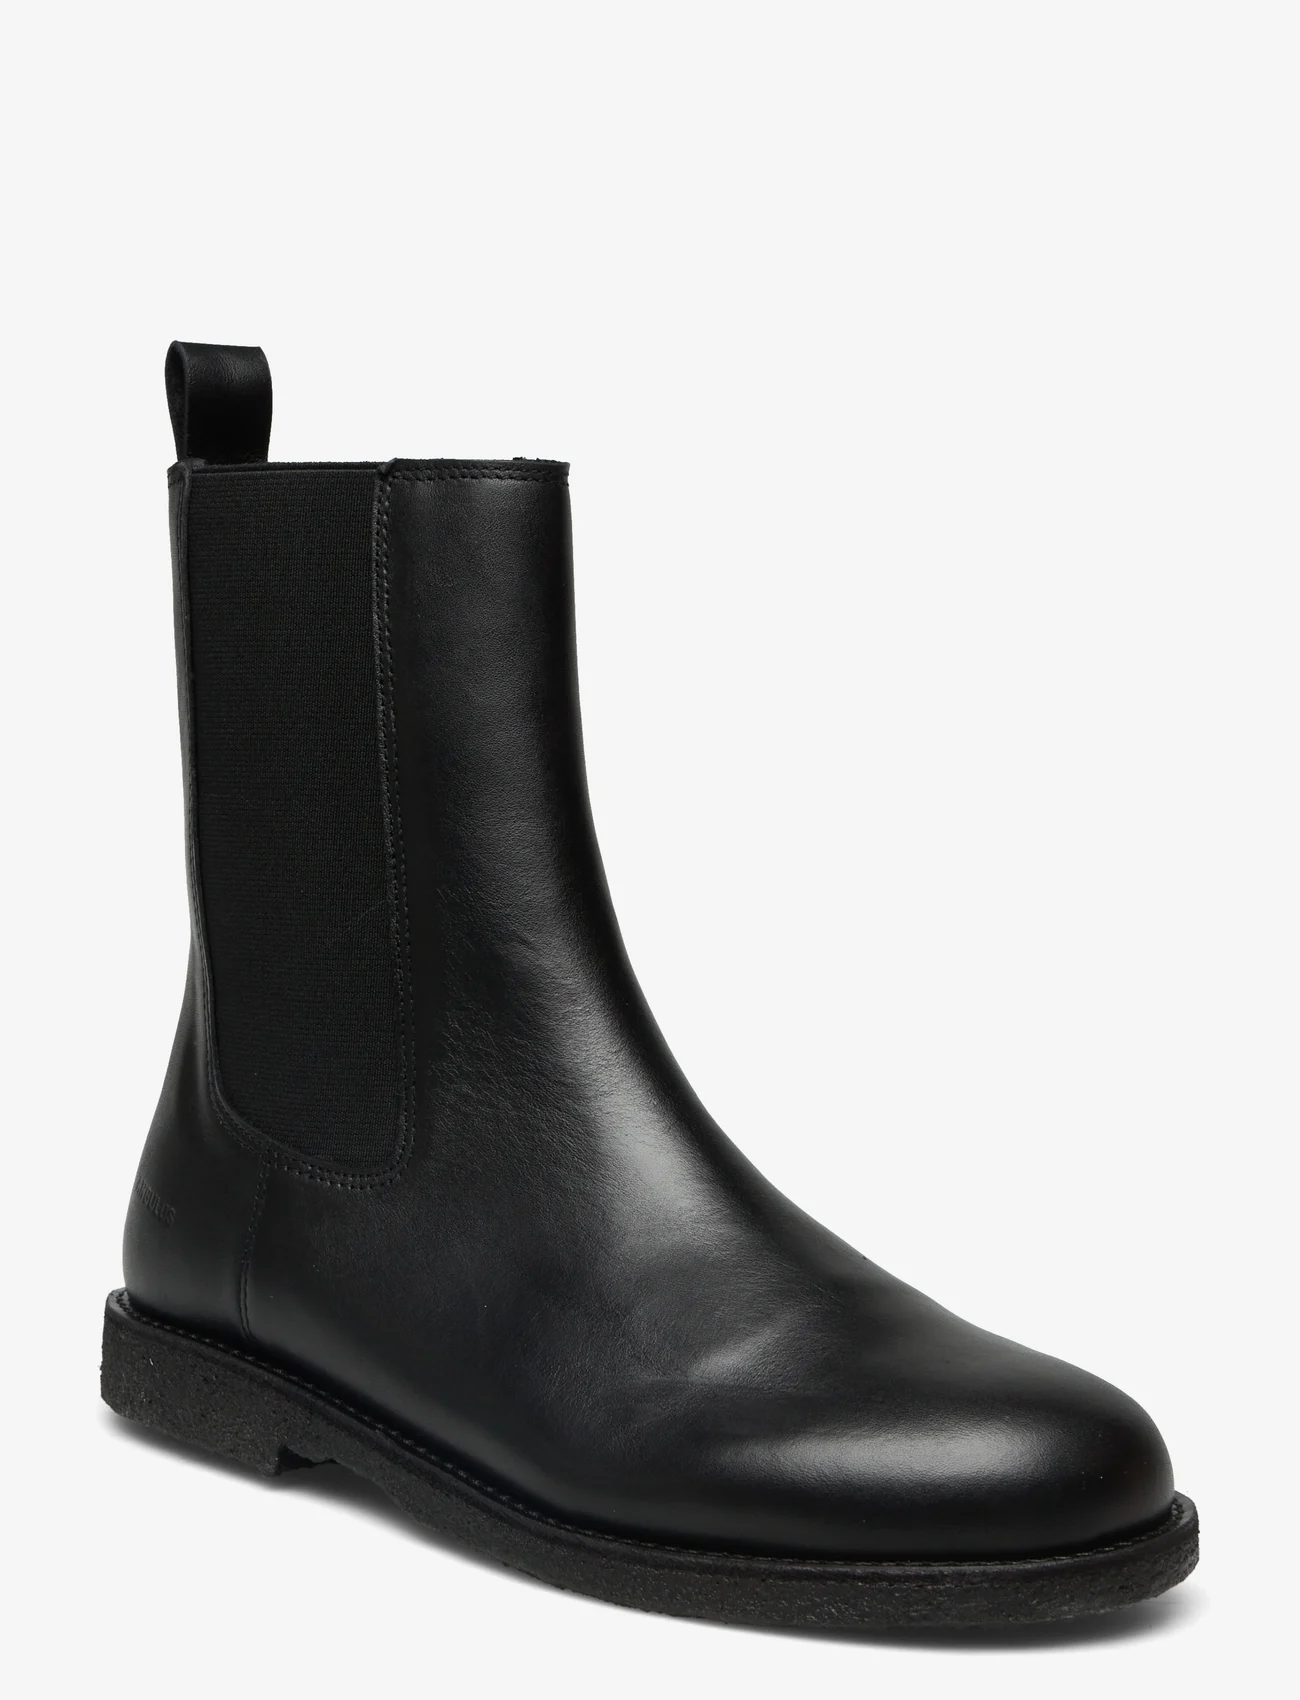 ANGULUS - Boots - flat - chelsea-saapad - 1604/001 black/black - 0